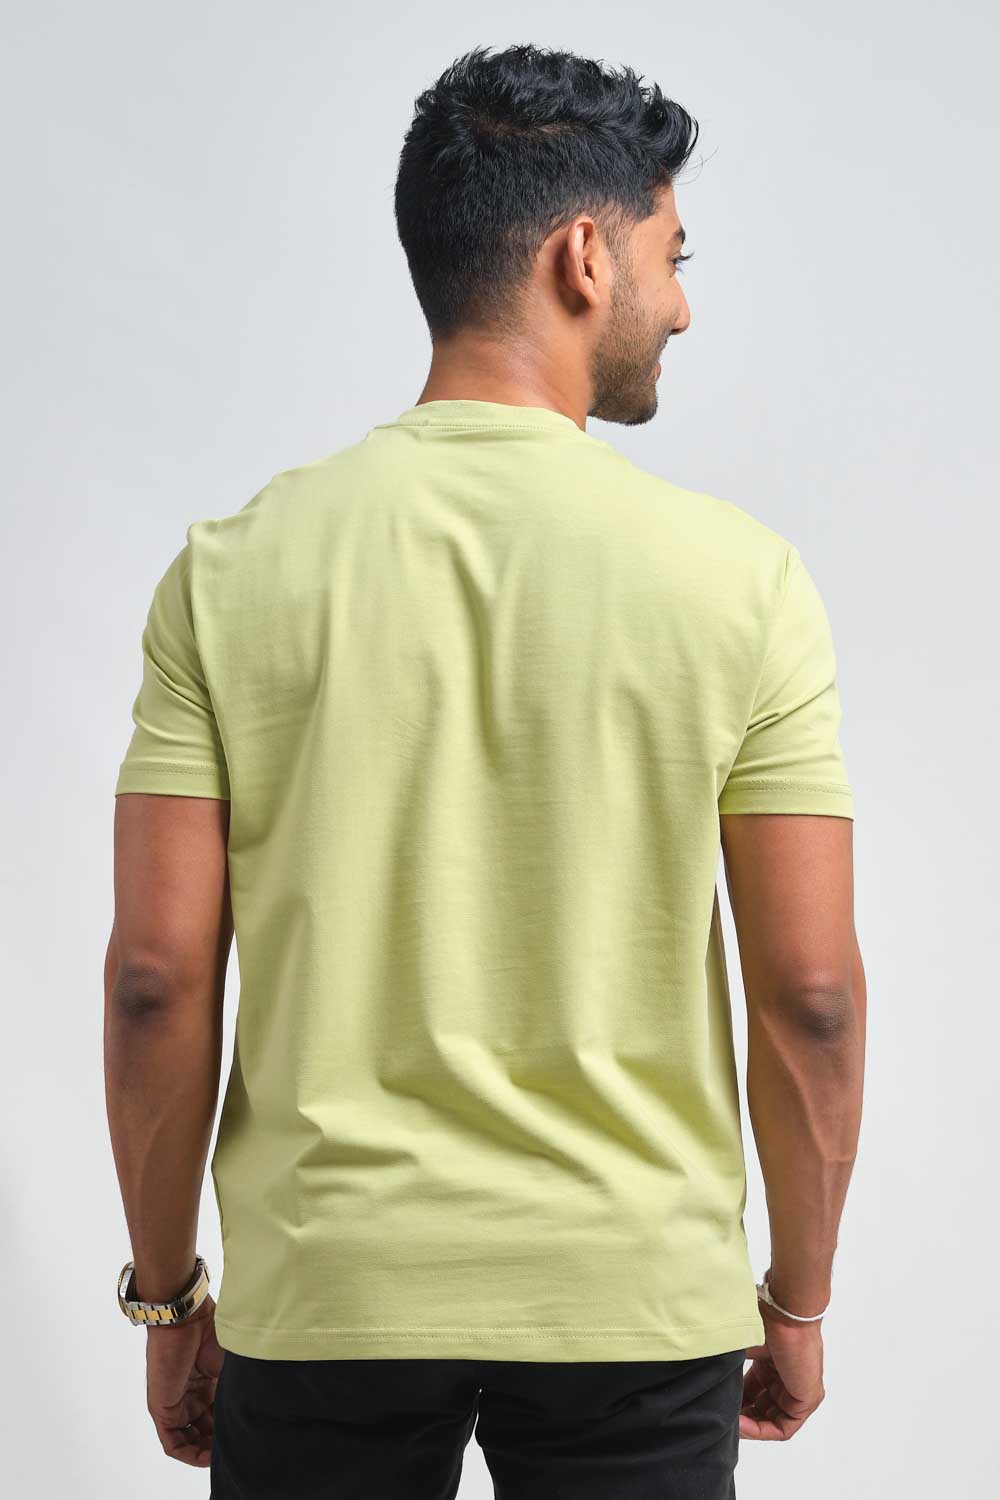 Plain Light Green crew neck essential t-shirt